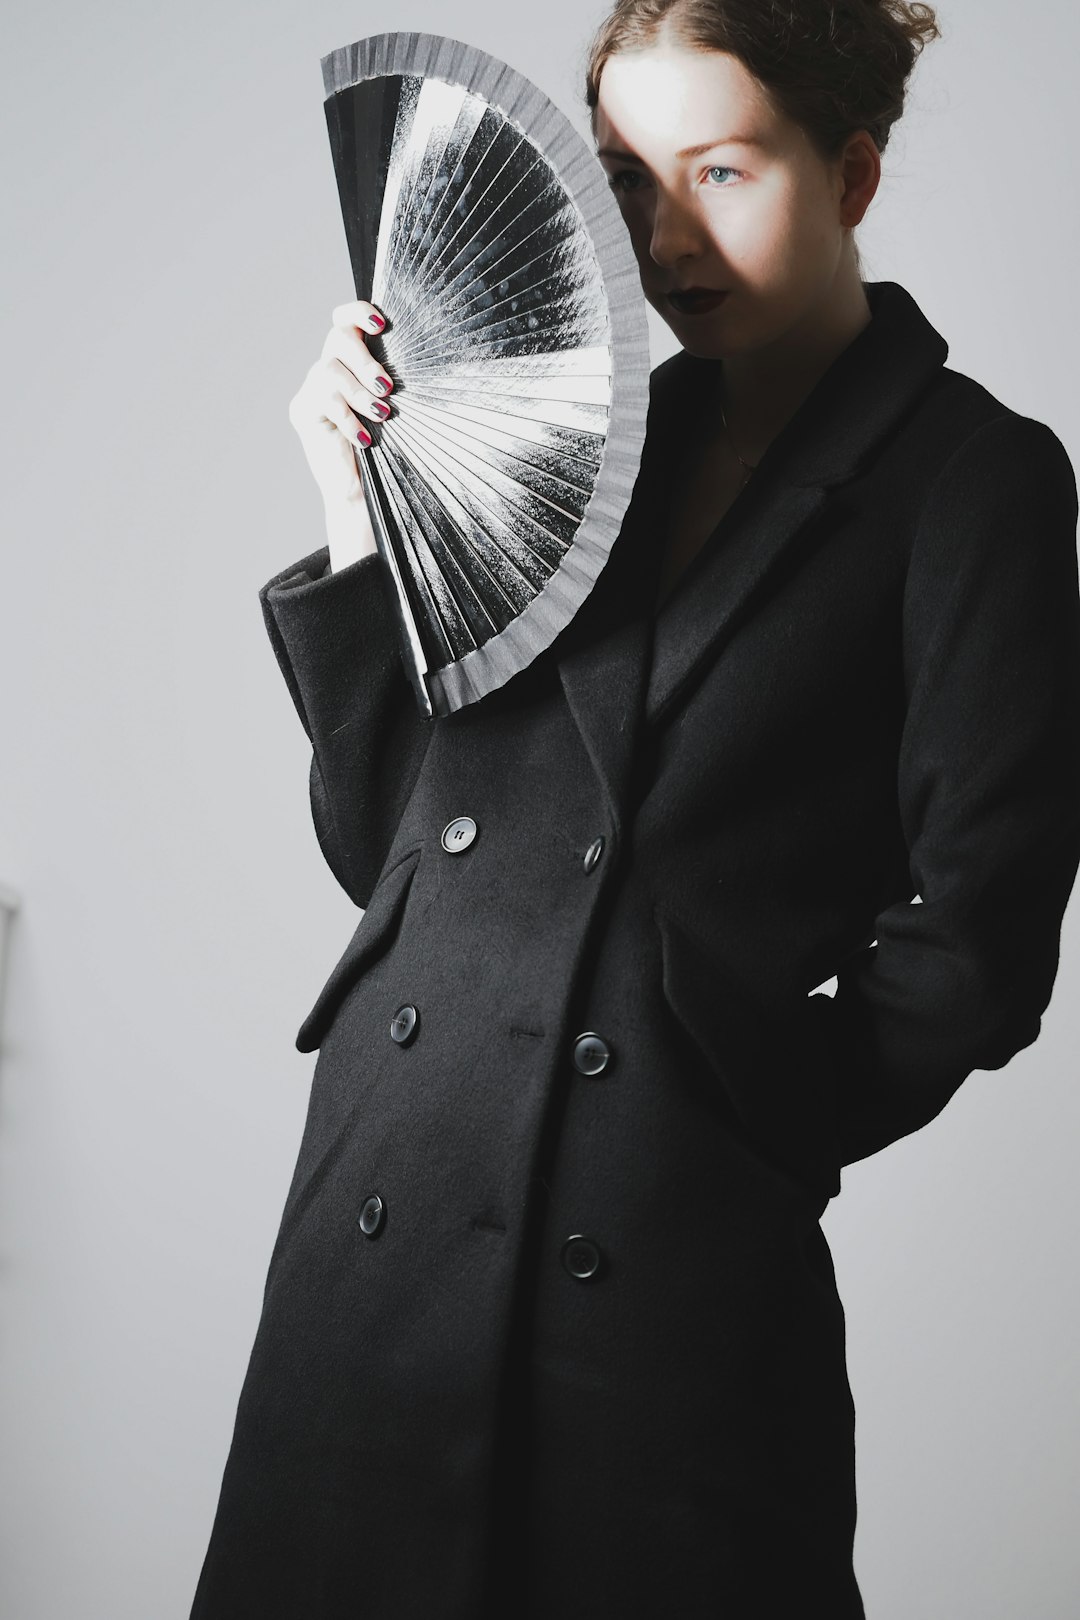 man in black coat holding fan